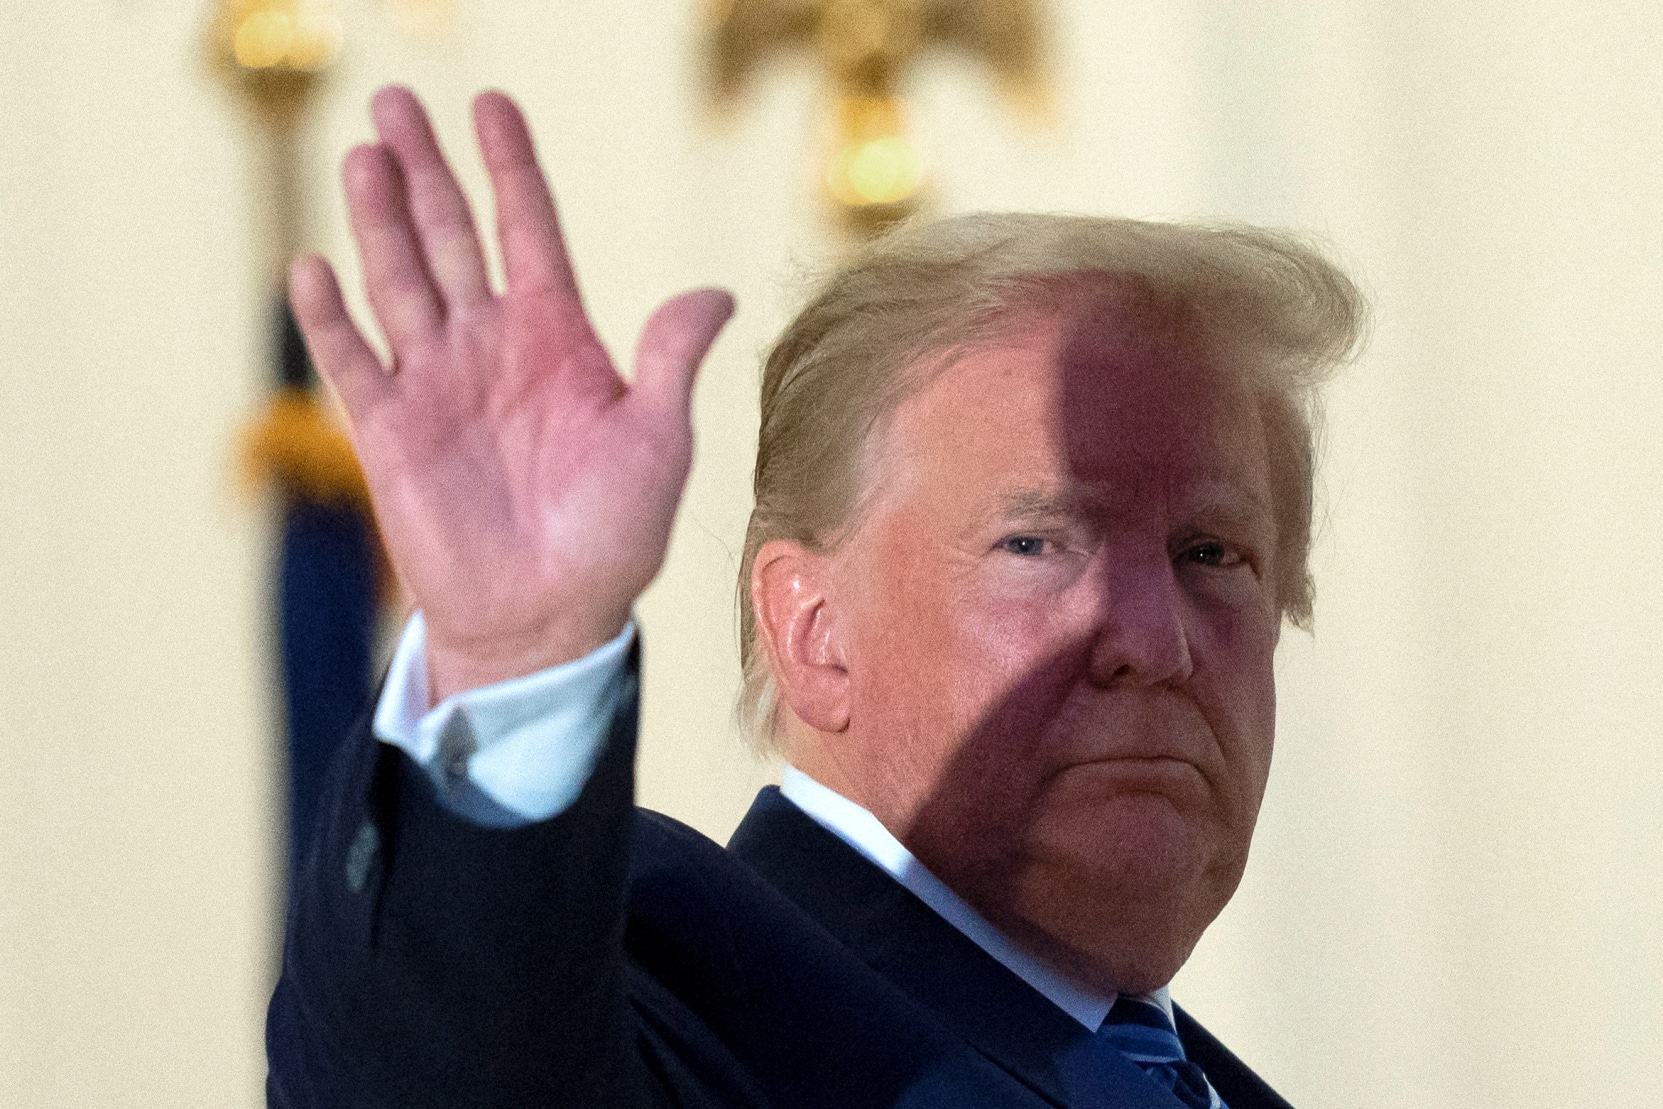 Trump Halt of COVID-19 Relief Talks Draws Sharp Rebuke on Capitol Hill